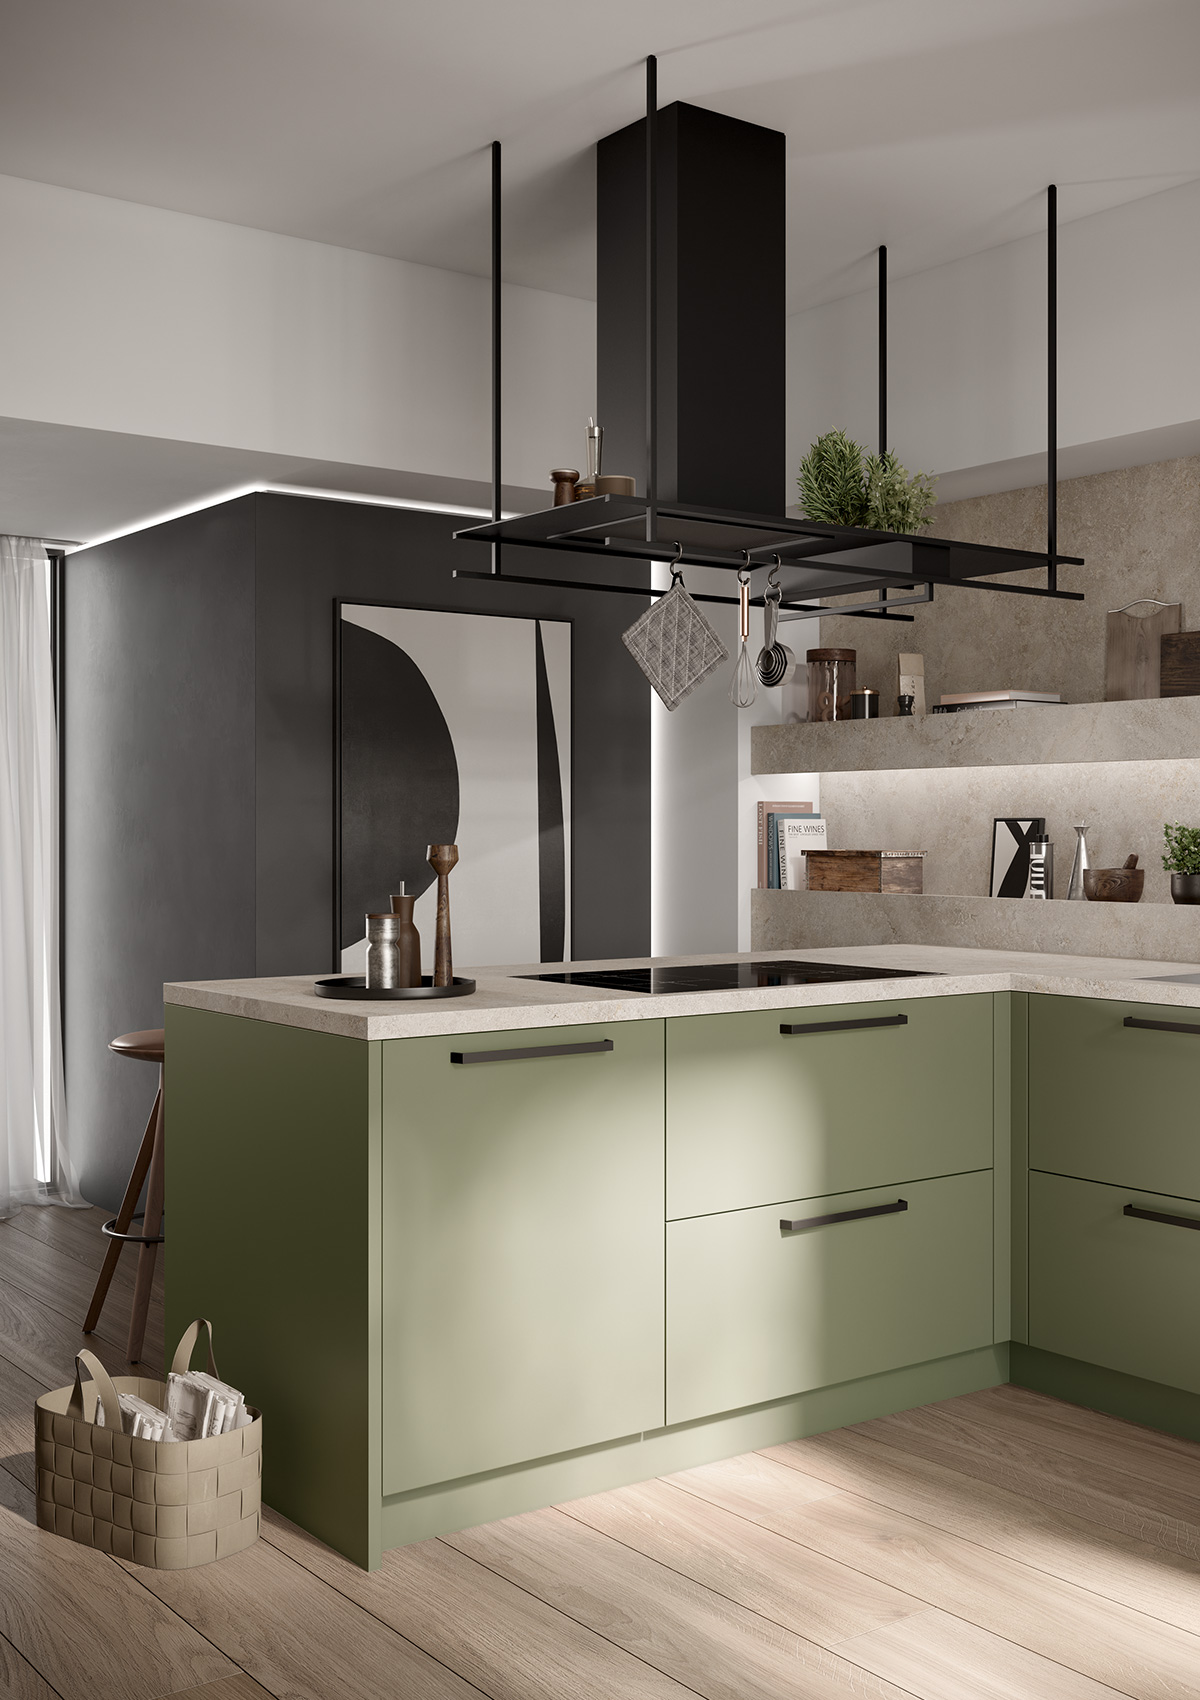 Bild der Küchentheke der concept130 SCALA Olivgrün, darüber schwarze Dunstabzugshaube, im Vordergrund runder Esstisch mit Stühlen